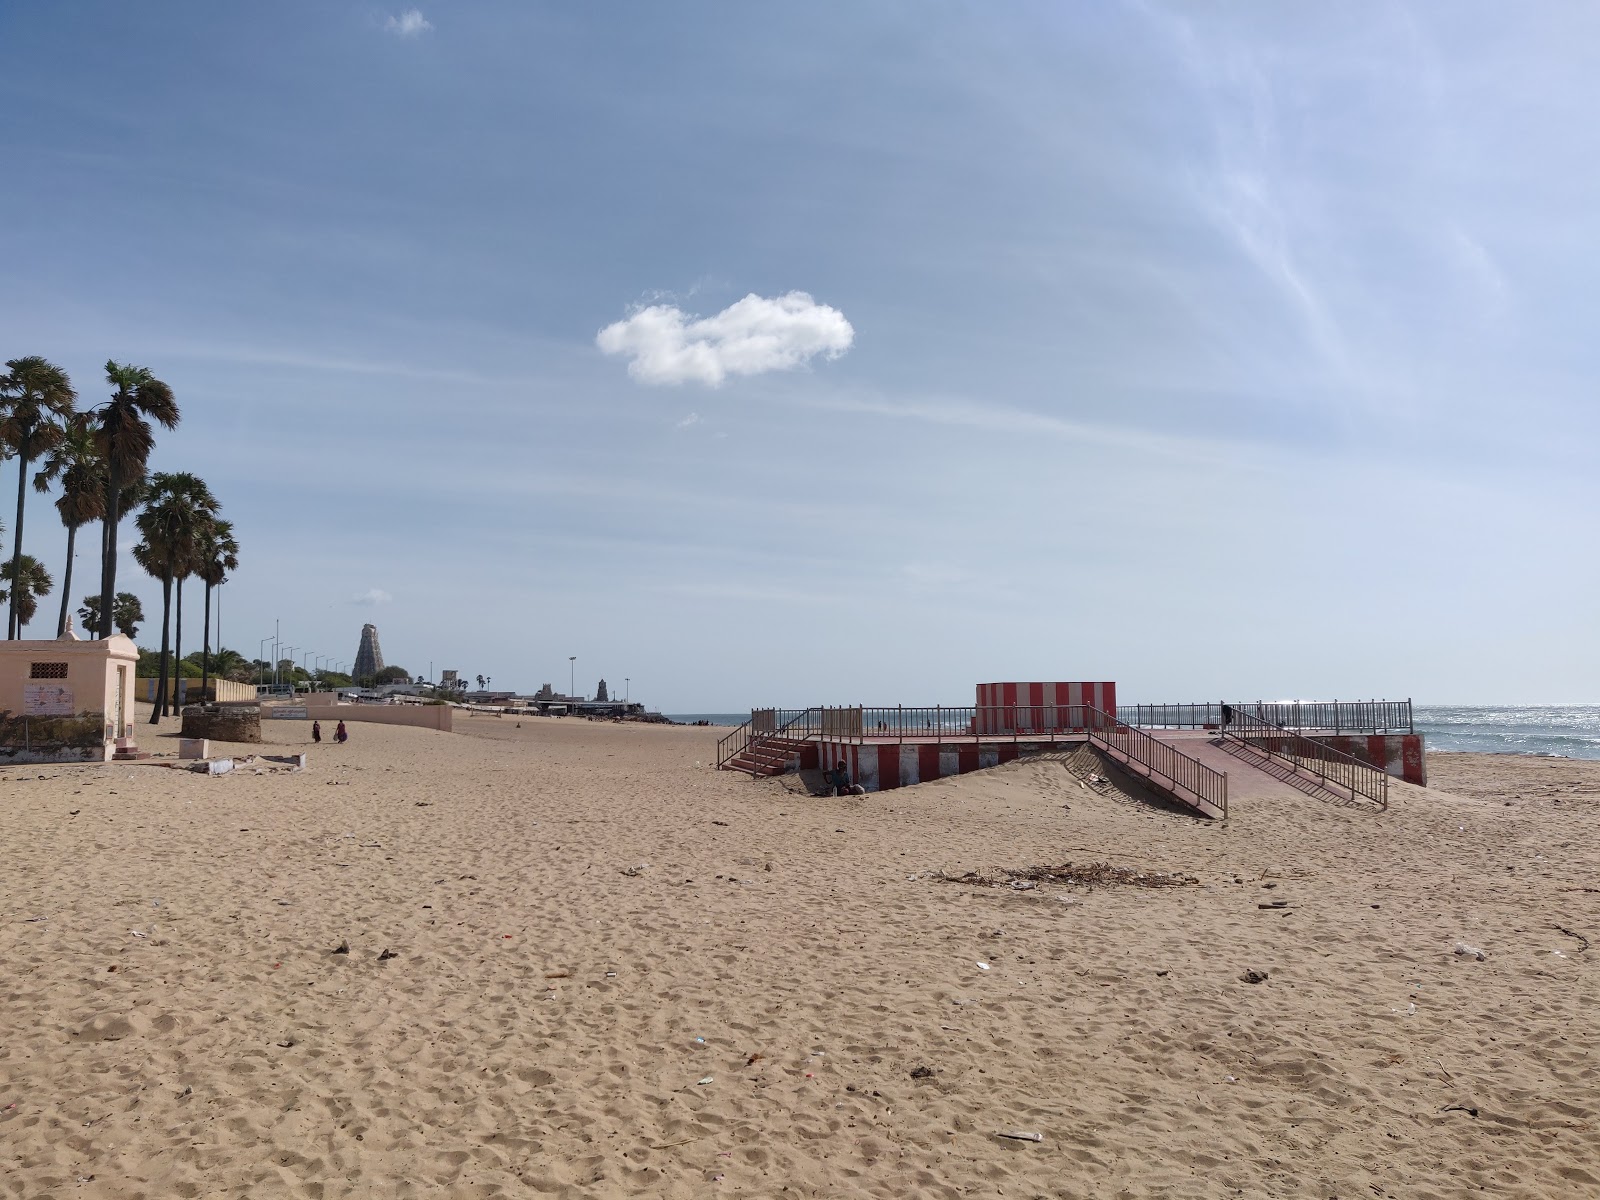 Tiruchendur Beach'in fotoğrafı geniş plaj ile birlikte